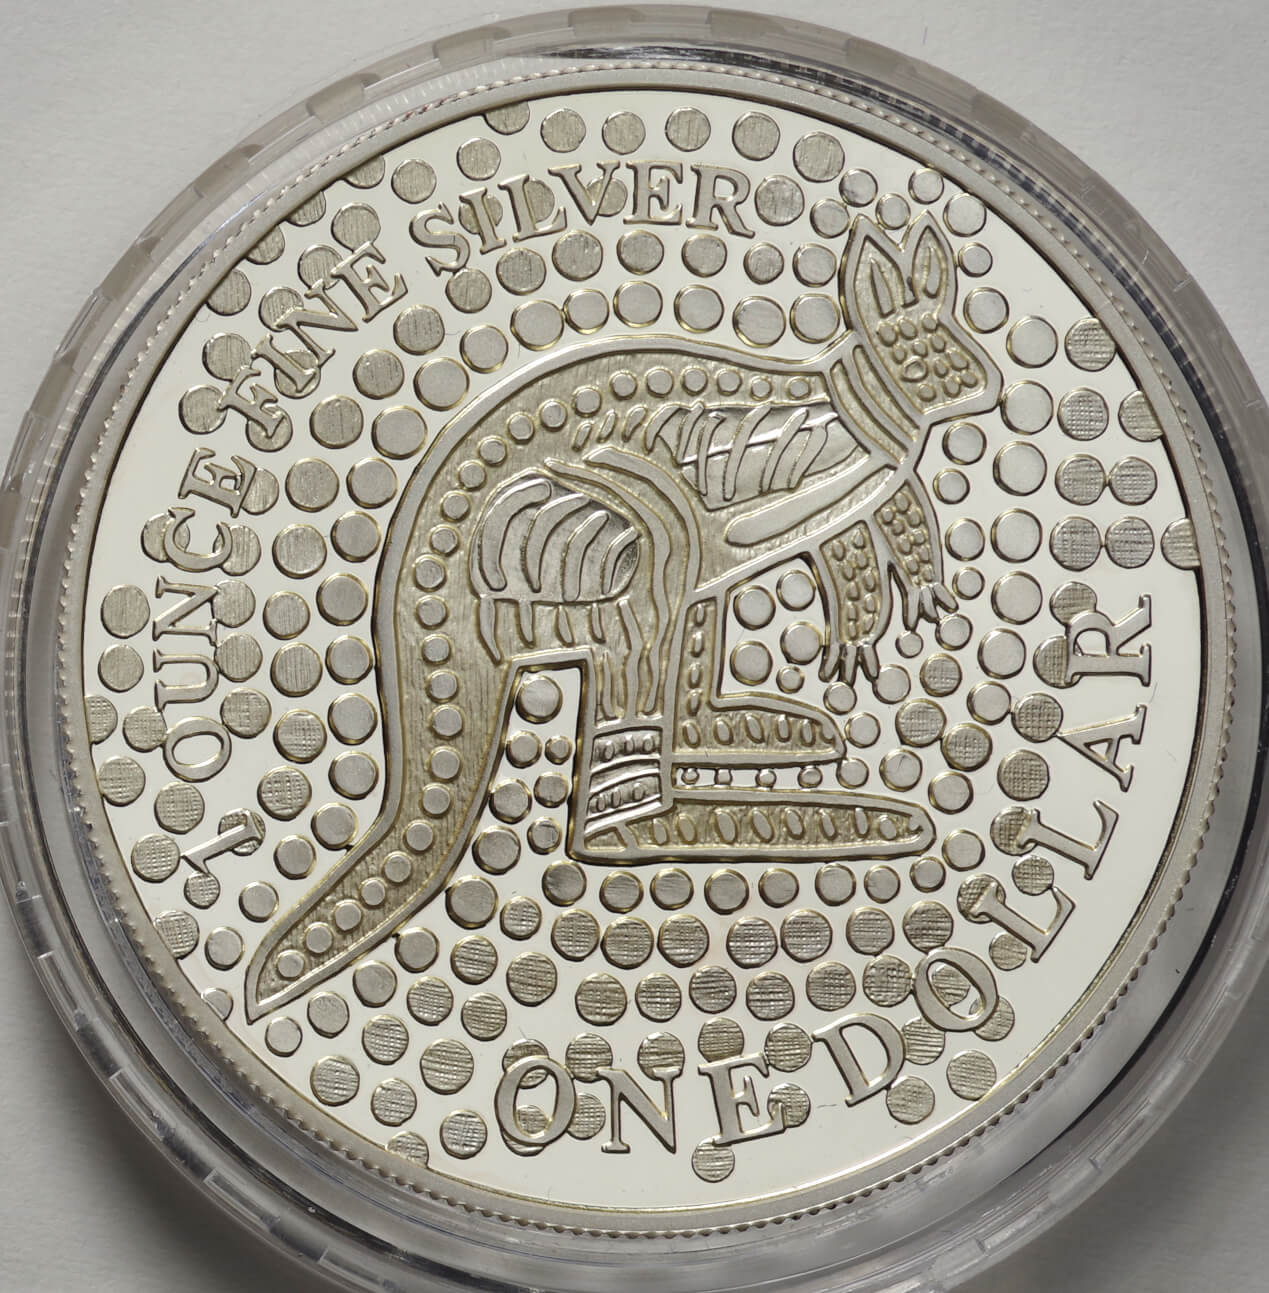 オーストラリア-Australia.カンガルー図 1ドル(1オンス)銀貨 2001年 ...